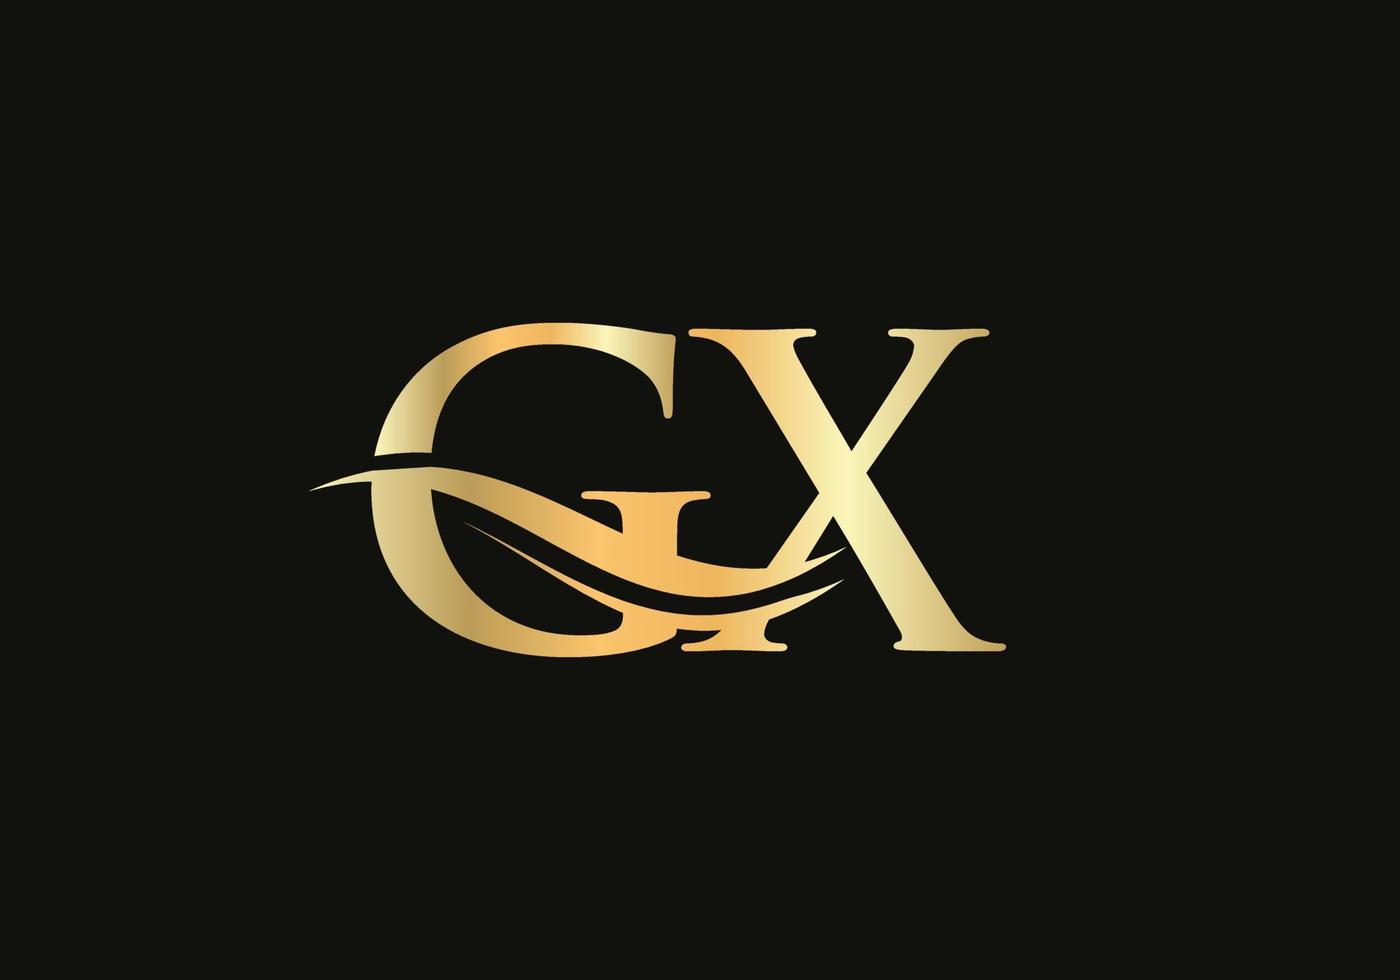 création de logo swoosh letter gx pour l'identité de l'entreprise et de l'entreprise. logo gx de vague d'eau avec tendance moderne vecteur